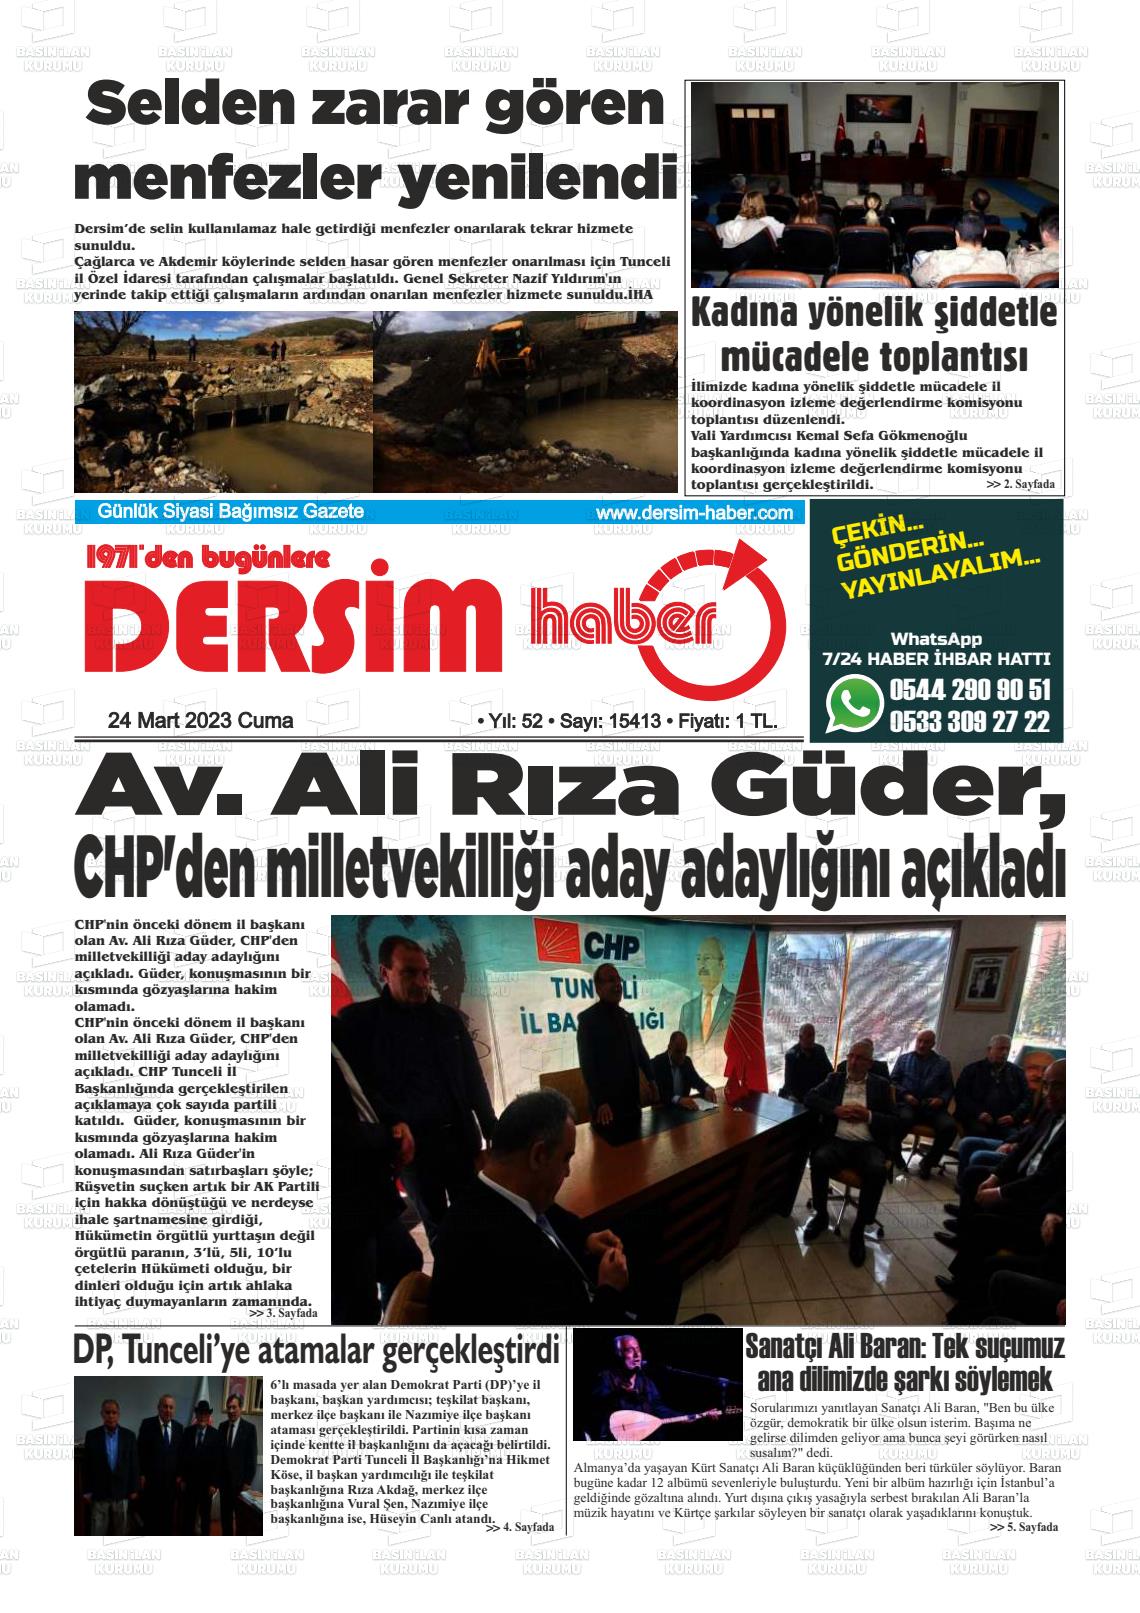 24 Mart 2023 DERSİM HABER Gazete Manşeti